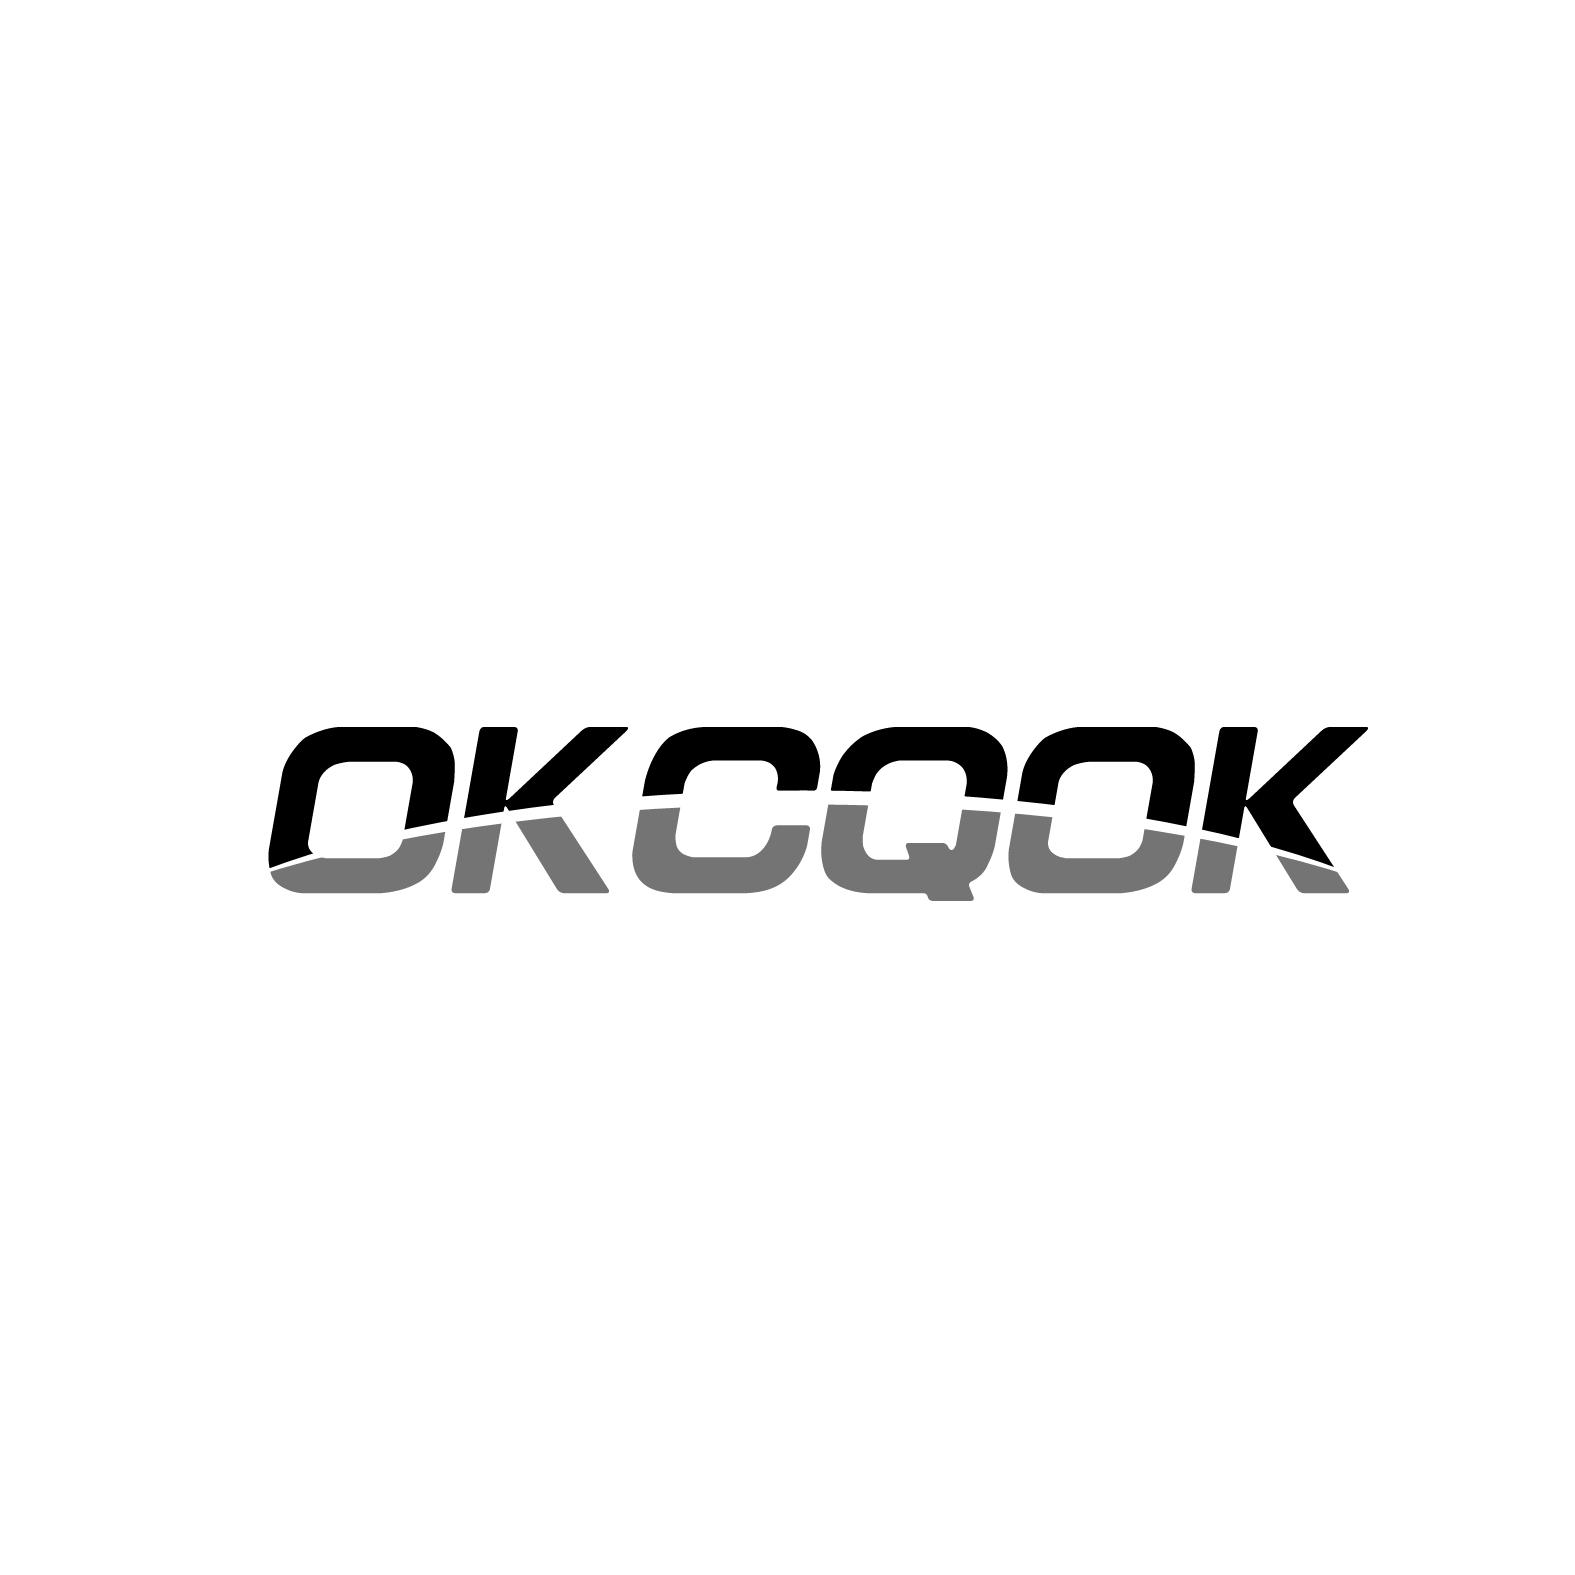 OKCQOK